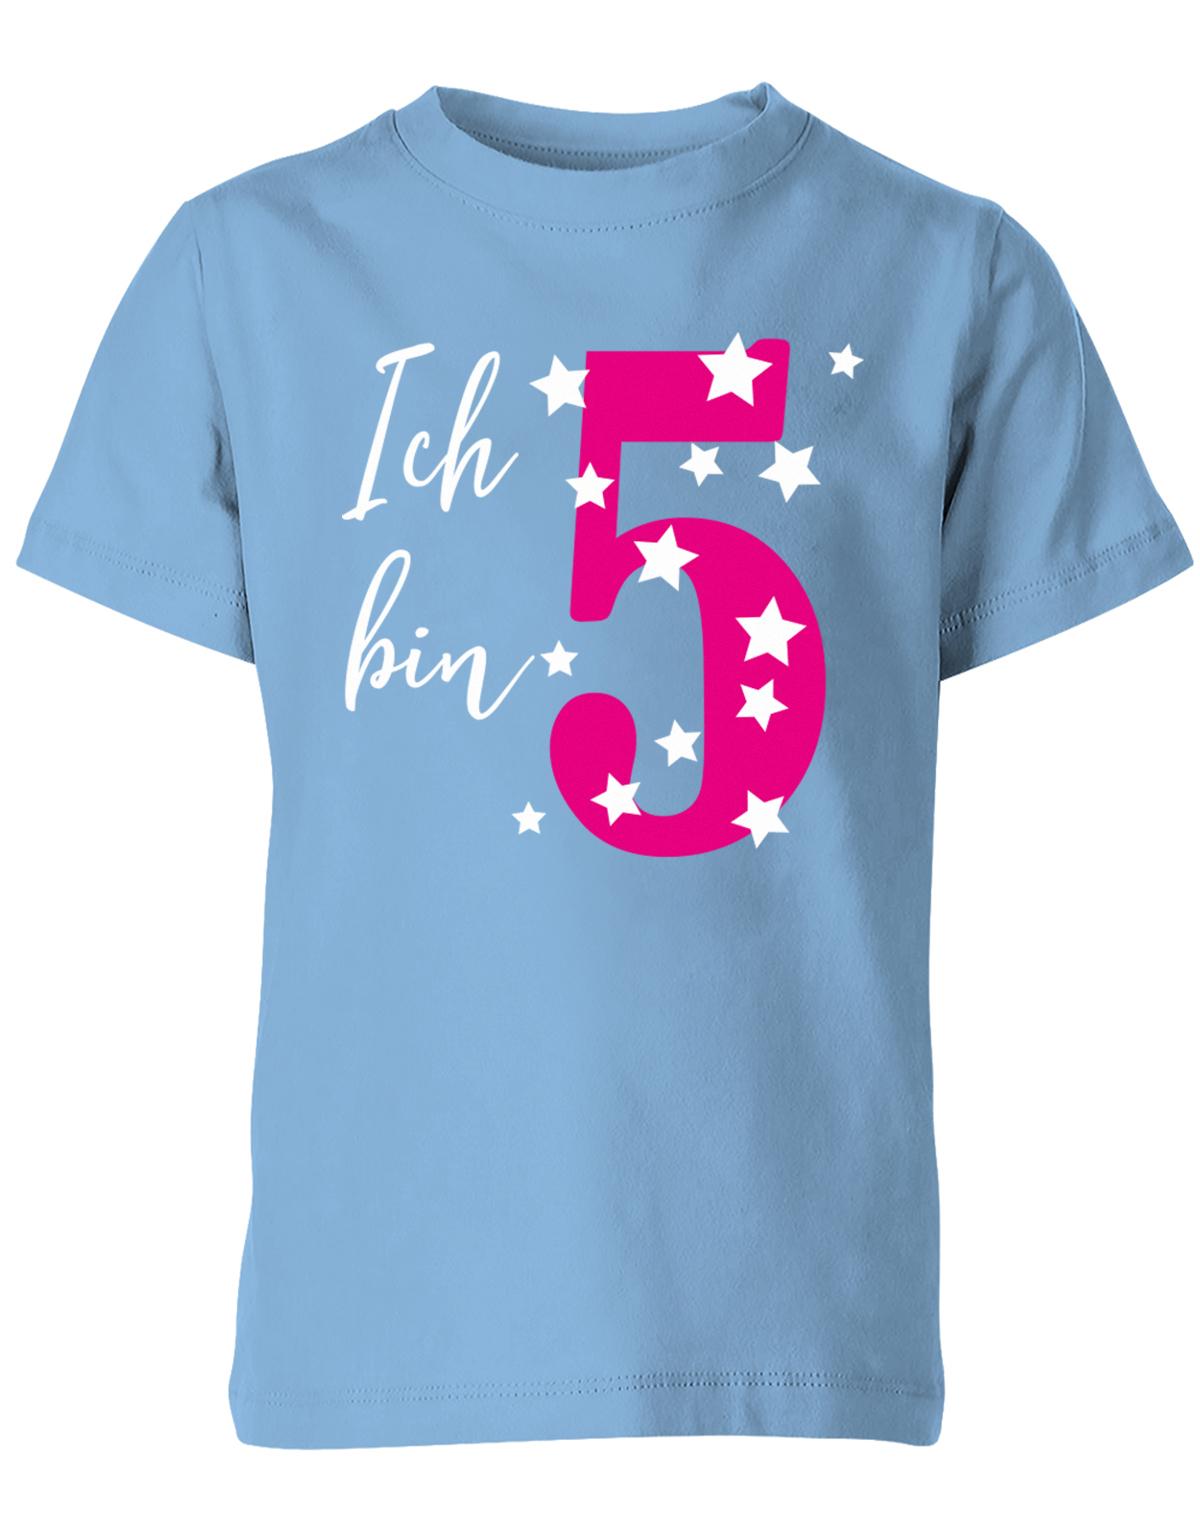 T-Shirt 5 Geburtstag ich bin 5 in Pink mit Sterne verziert für Mädchen hellblau